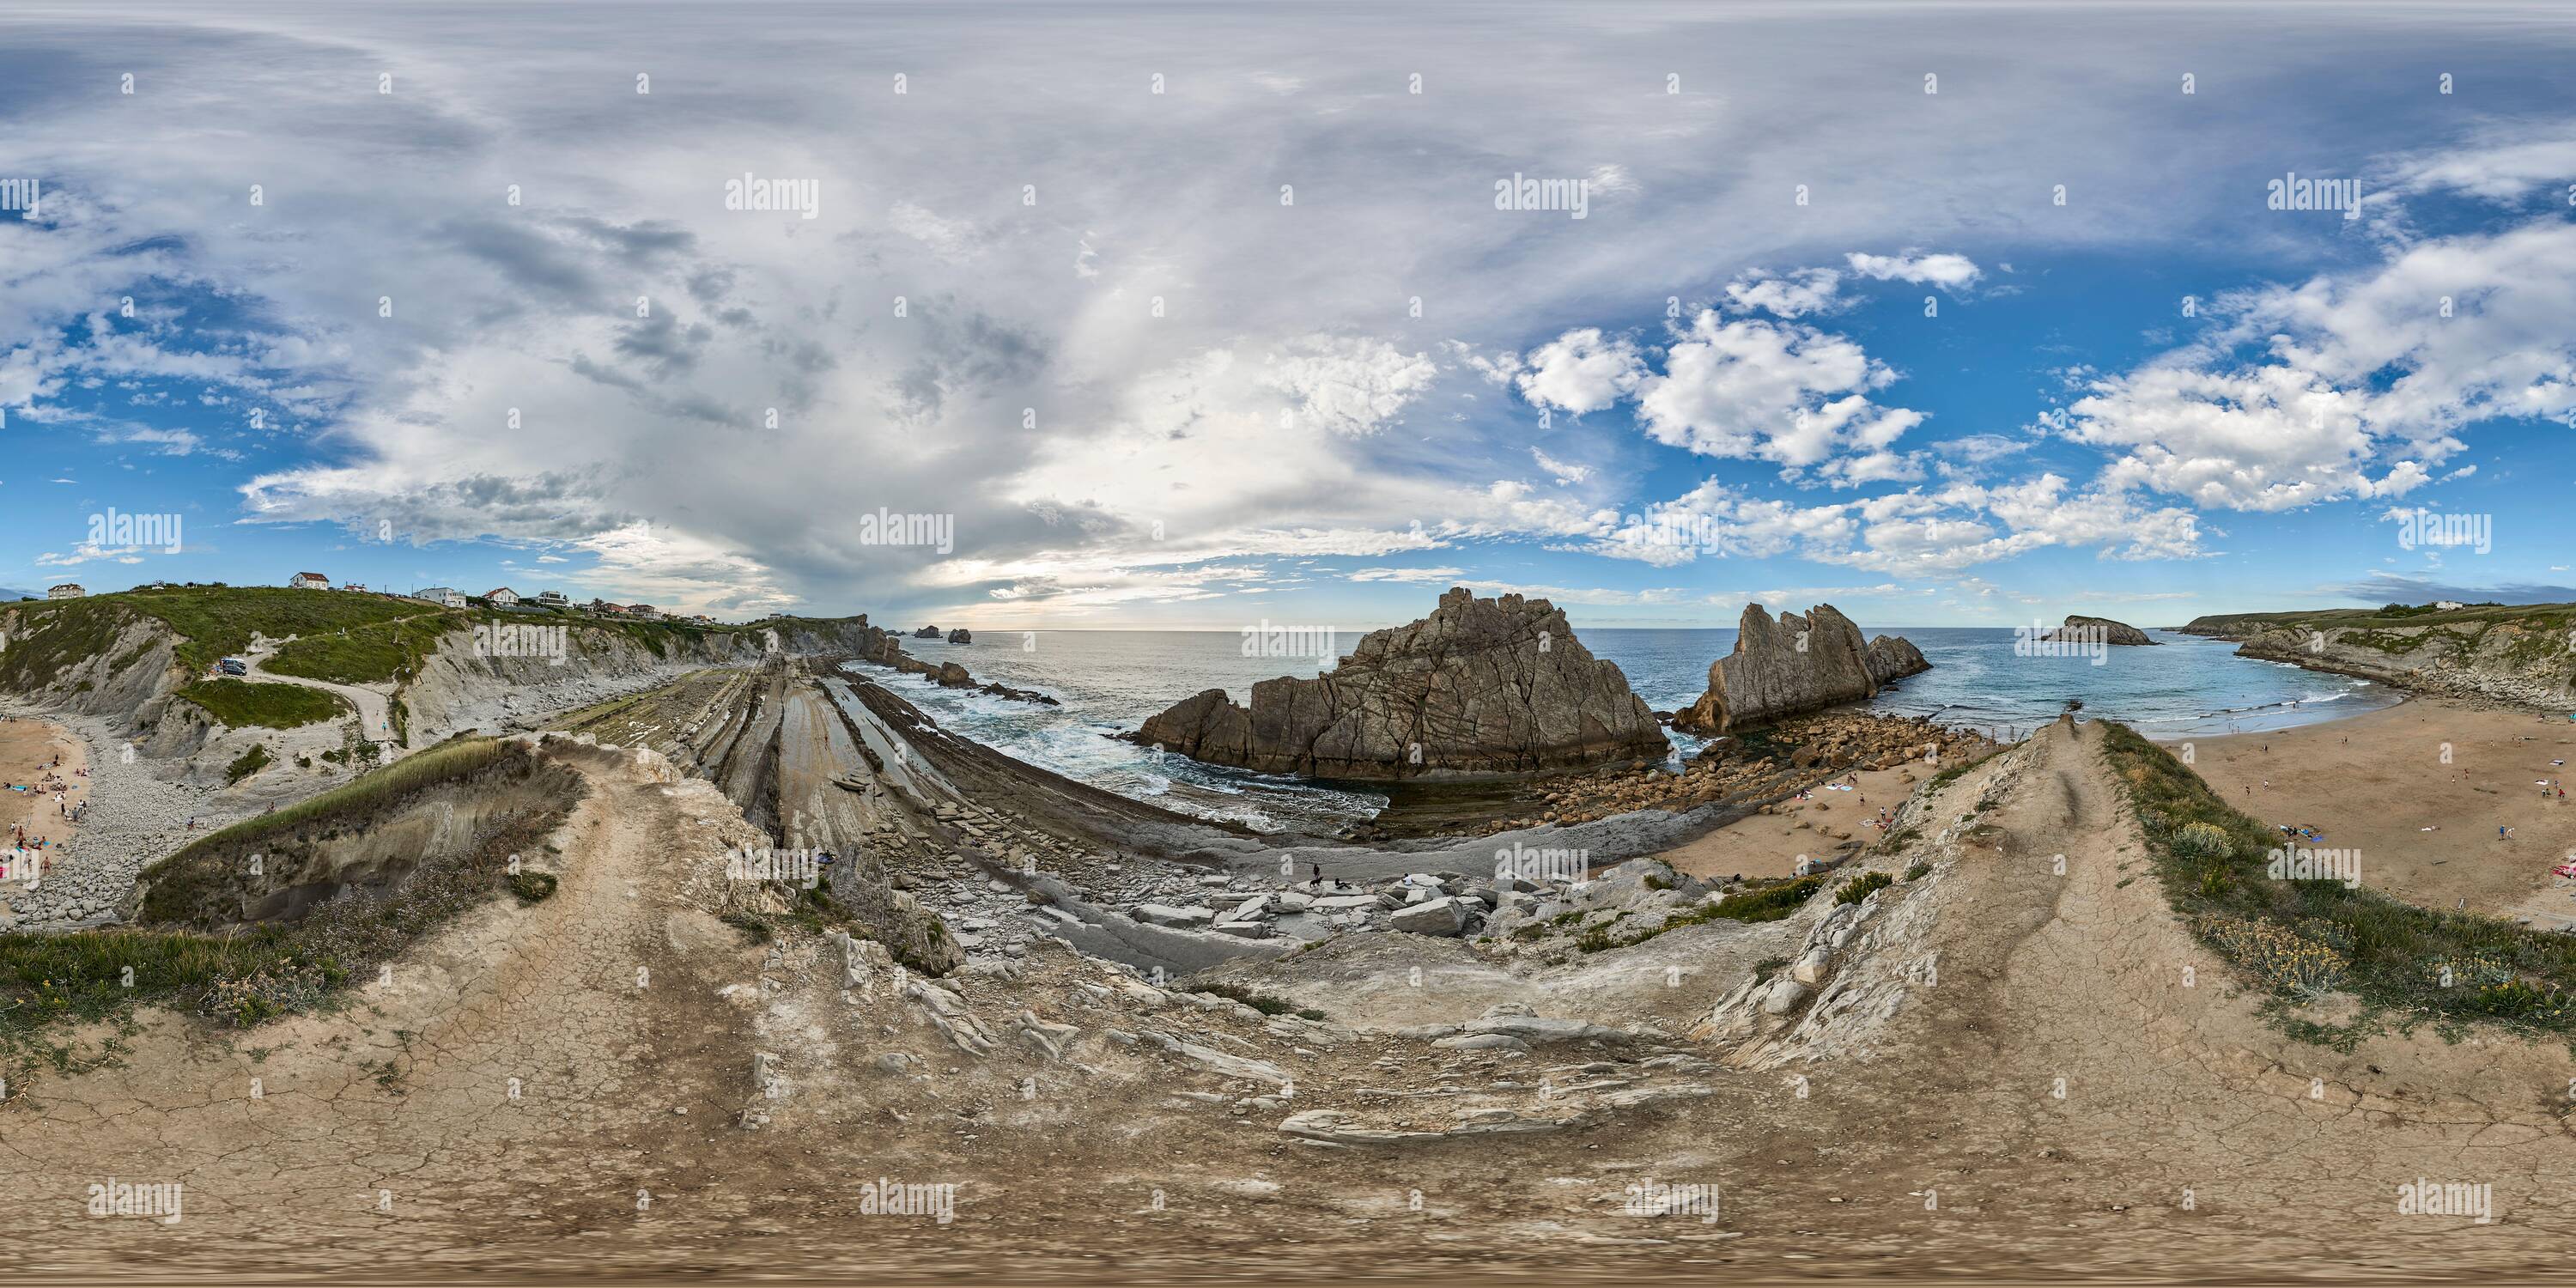 Vue panoramique à 360° de 360 degrés panoramique: La plage Arnía située dans la municipalité de Piélagos avec des rochers de plus de 90 millions d'années, en Cantabrie, Espagne, Europe